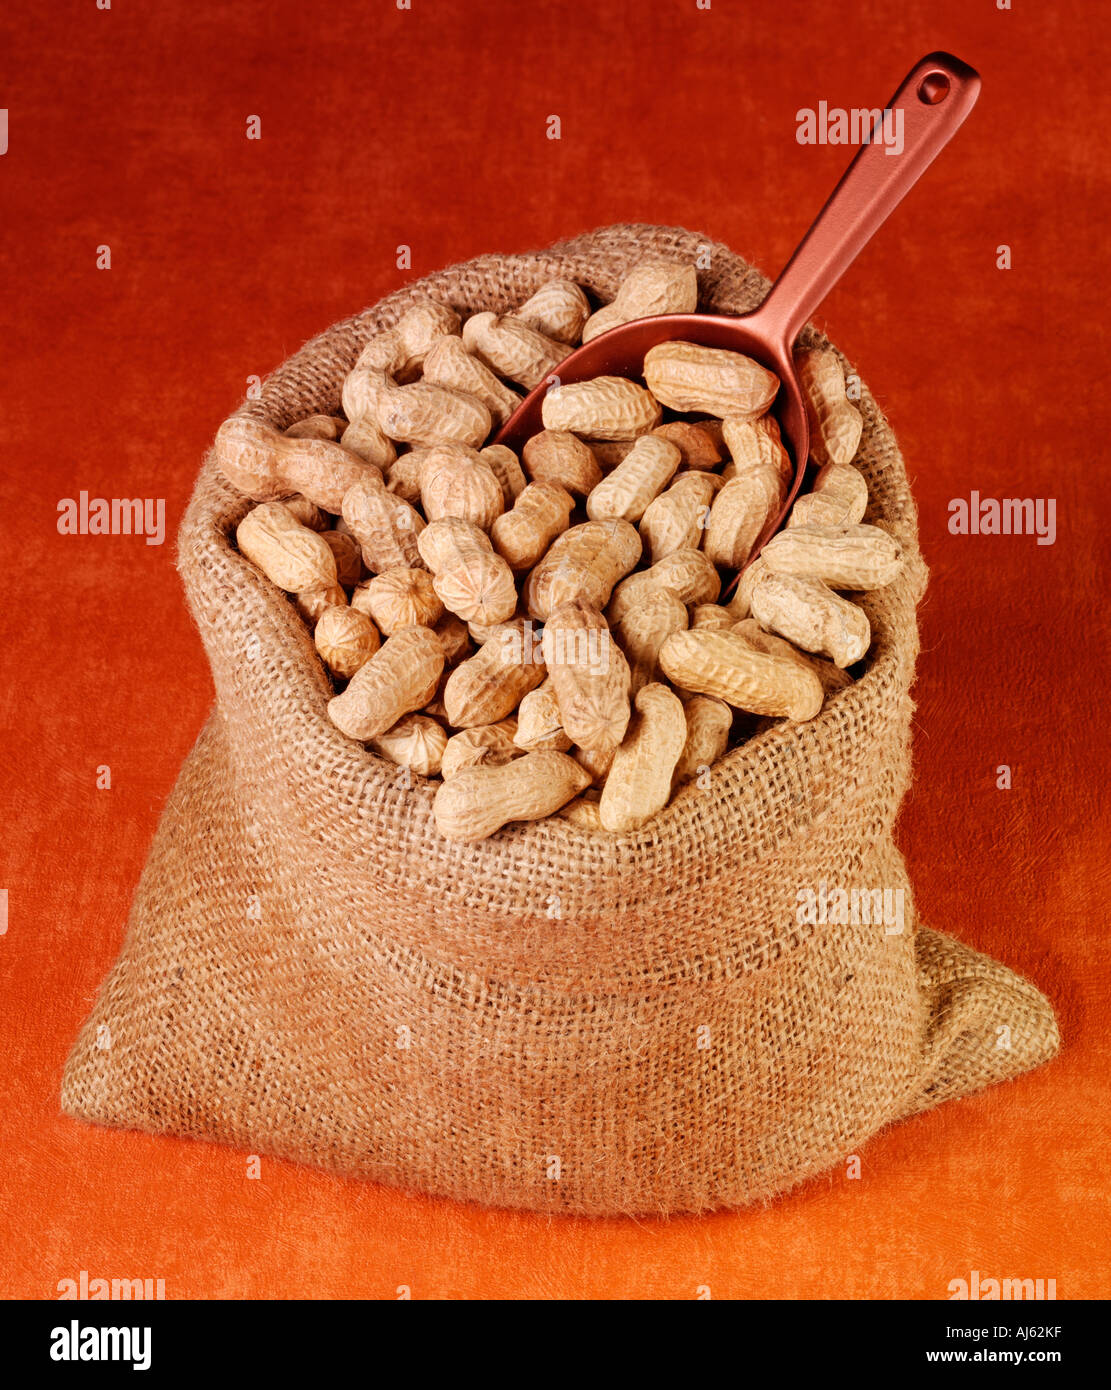 SACK OF MONKEY NUTS Stock Photo